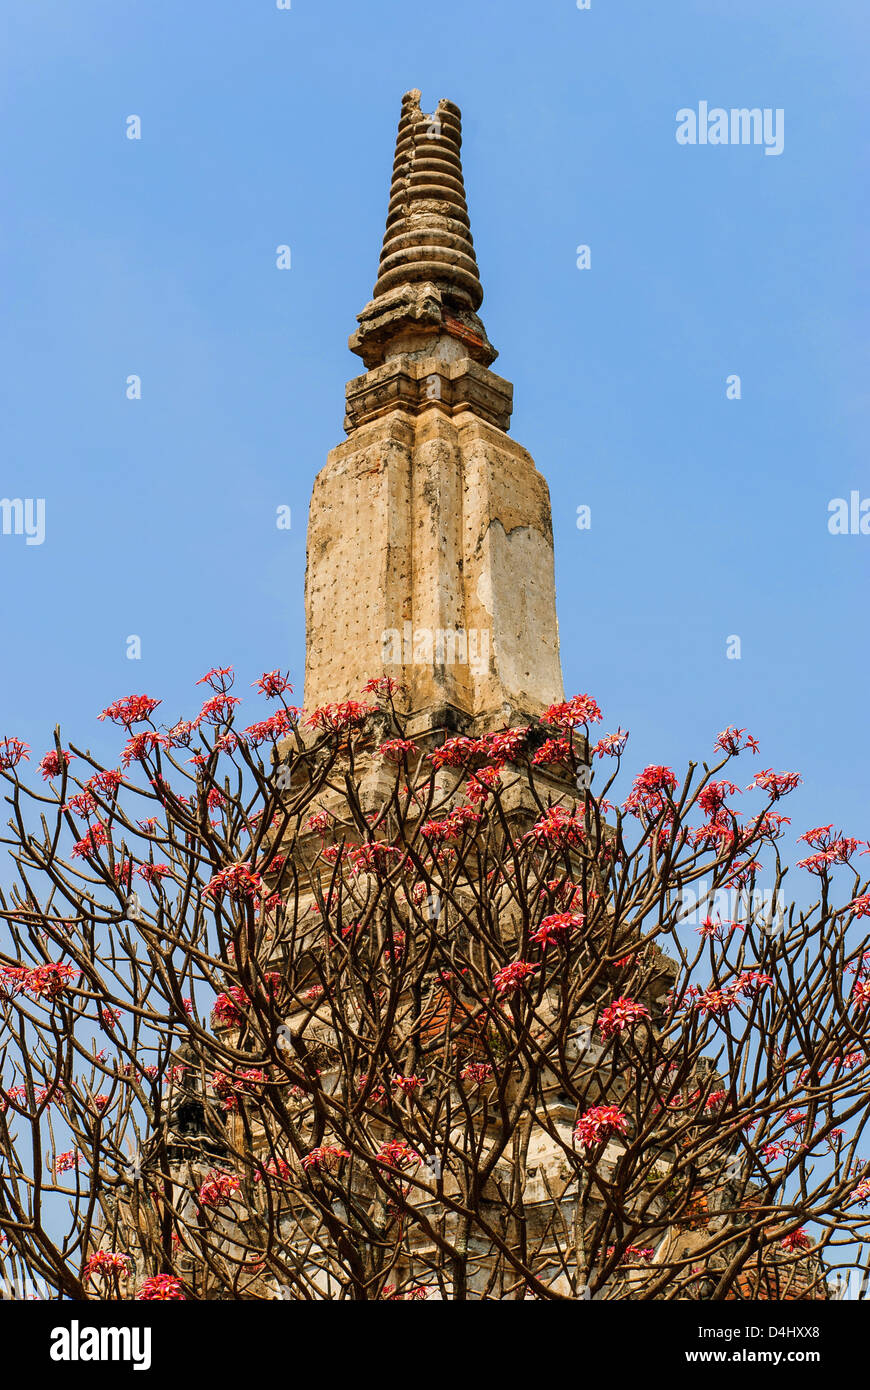 die Pagode und Baum Blume rot ist uralt die touristische Attraktion von Thailand Stockfoto